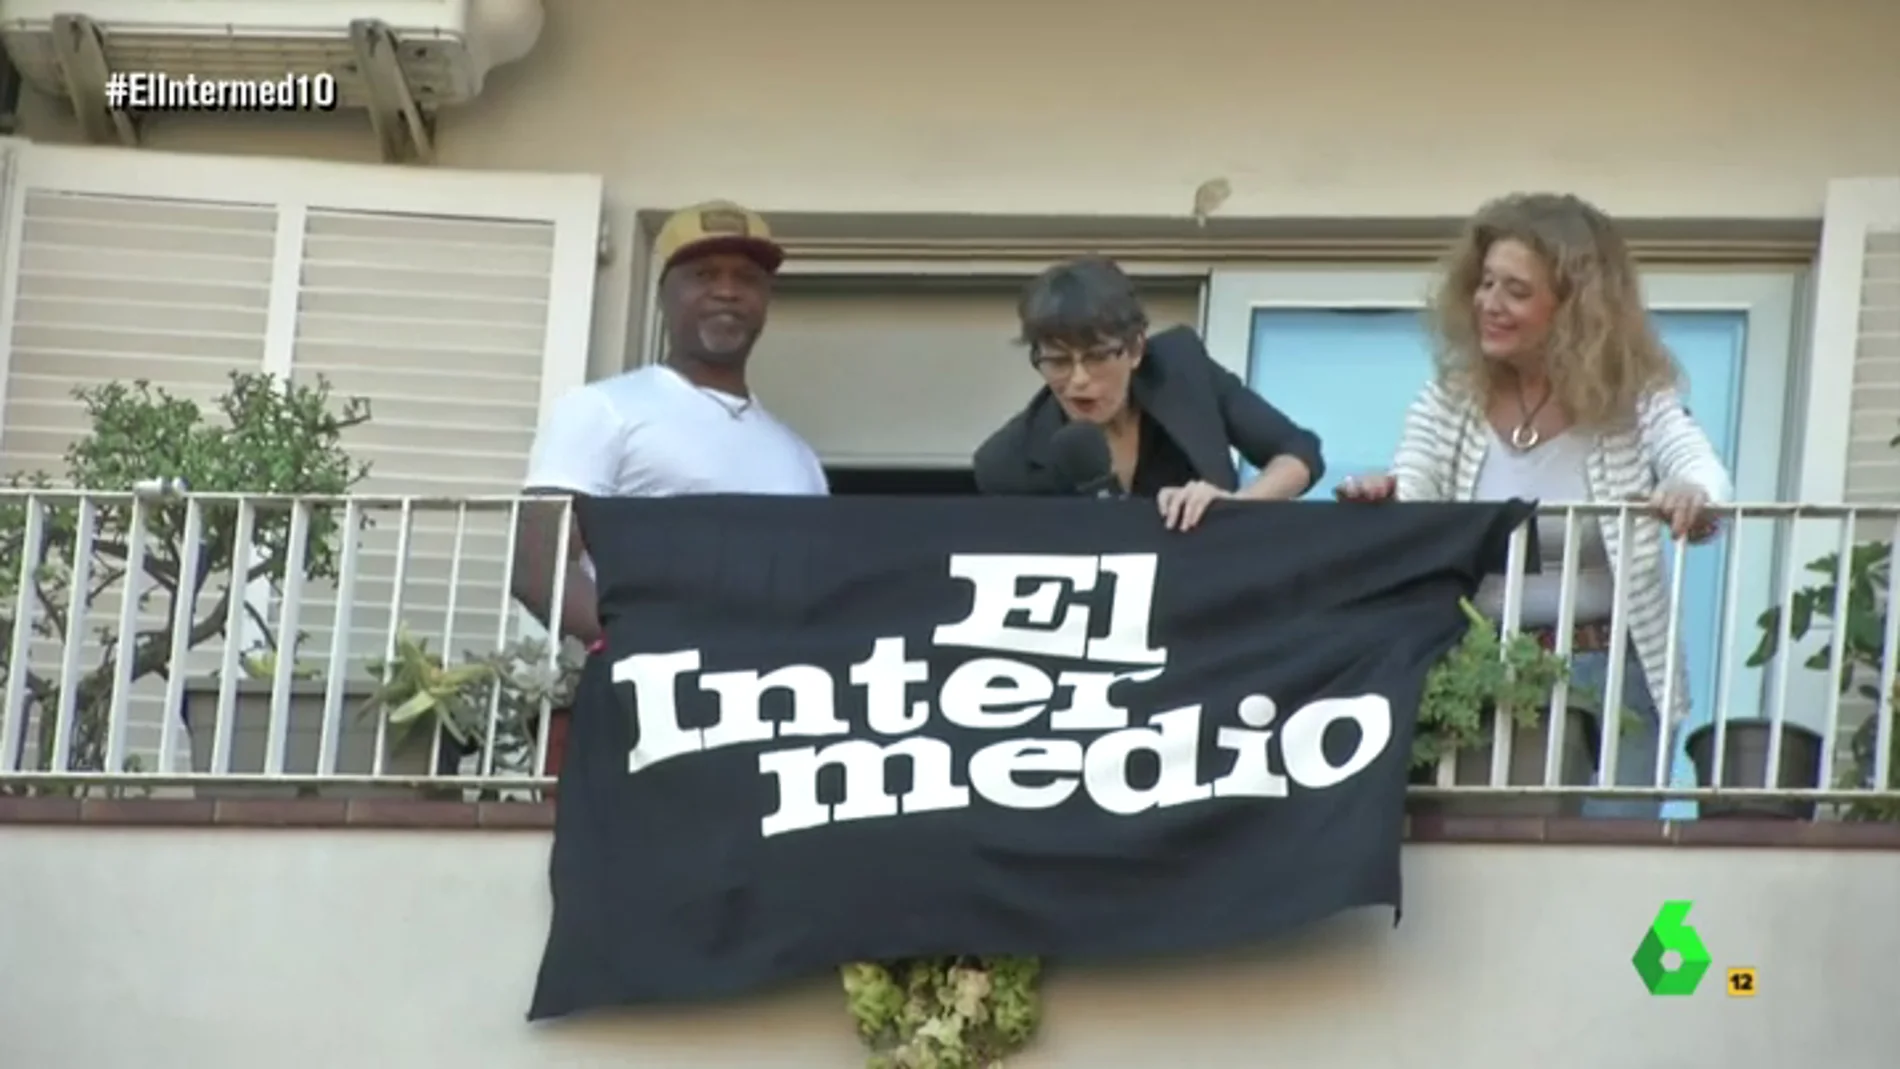 Thais Villas consigue colgar la bandera de El Intermedio entre la estelada y la española en Barcelona